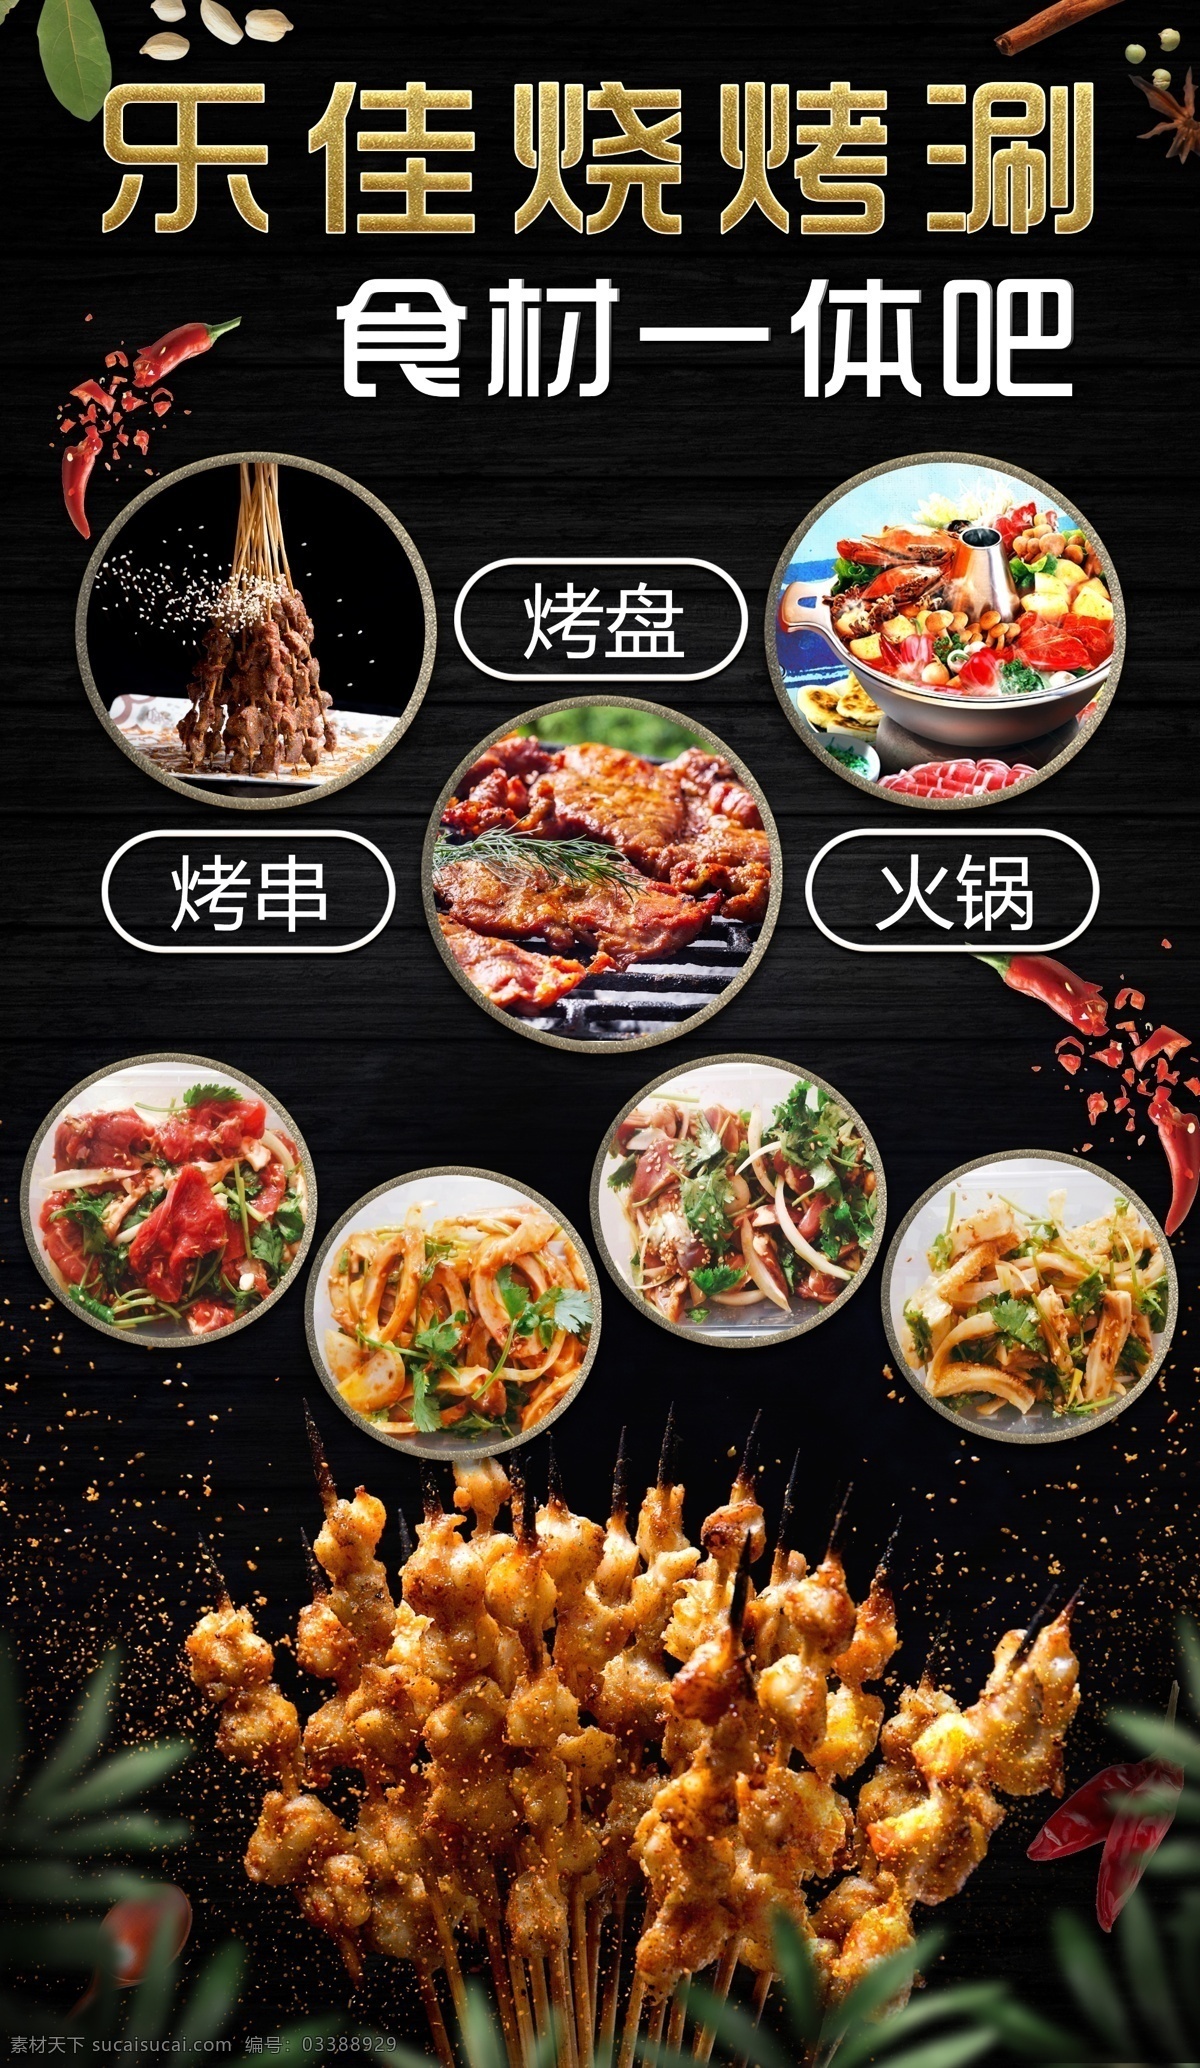 烧烤 涮 喷绘 海报 广告 火锅 烤肉类 价格表 食材 一体吧 传单 展板